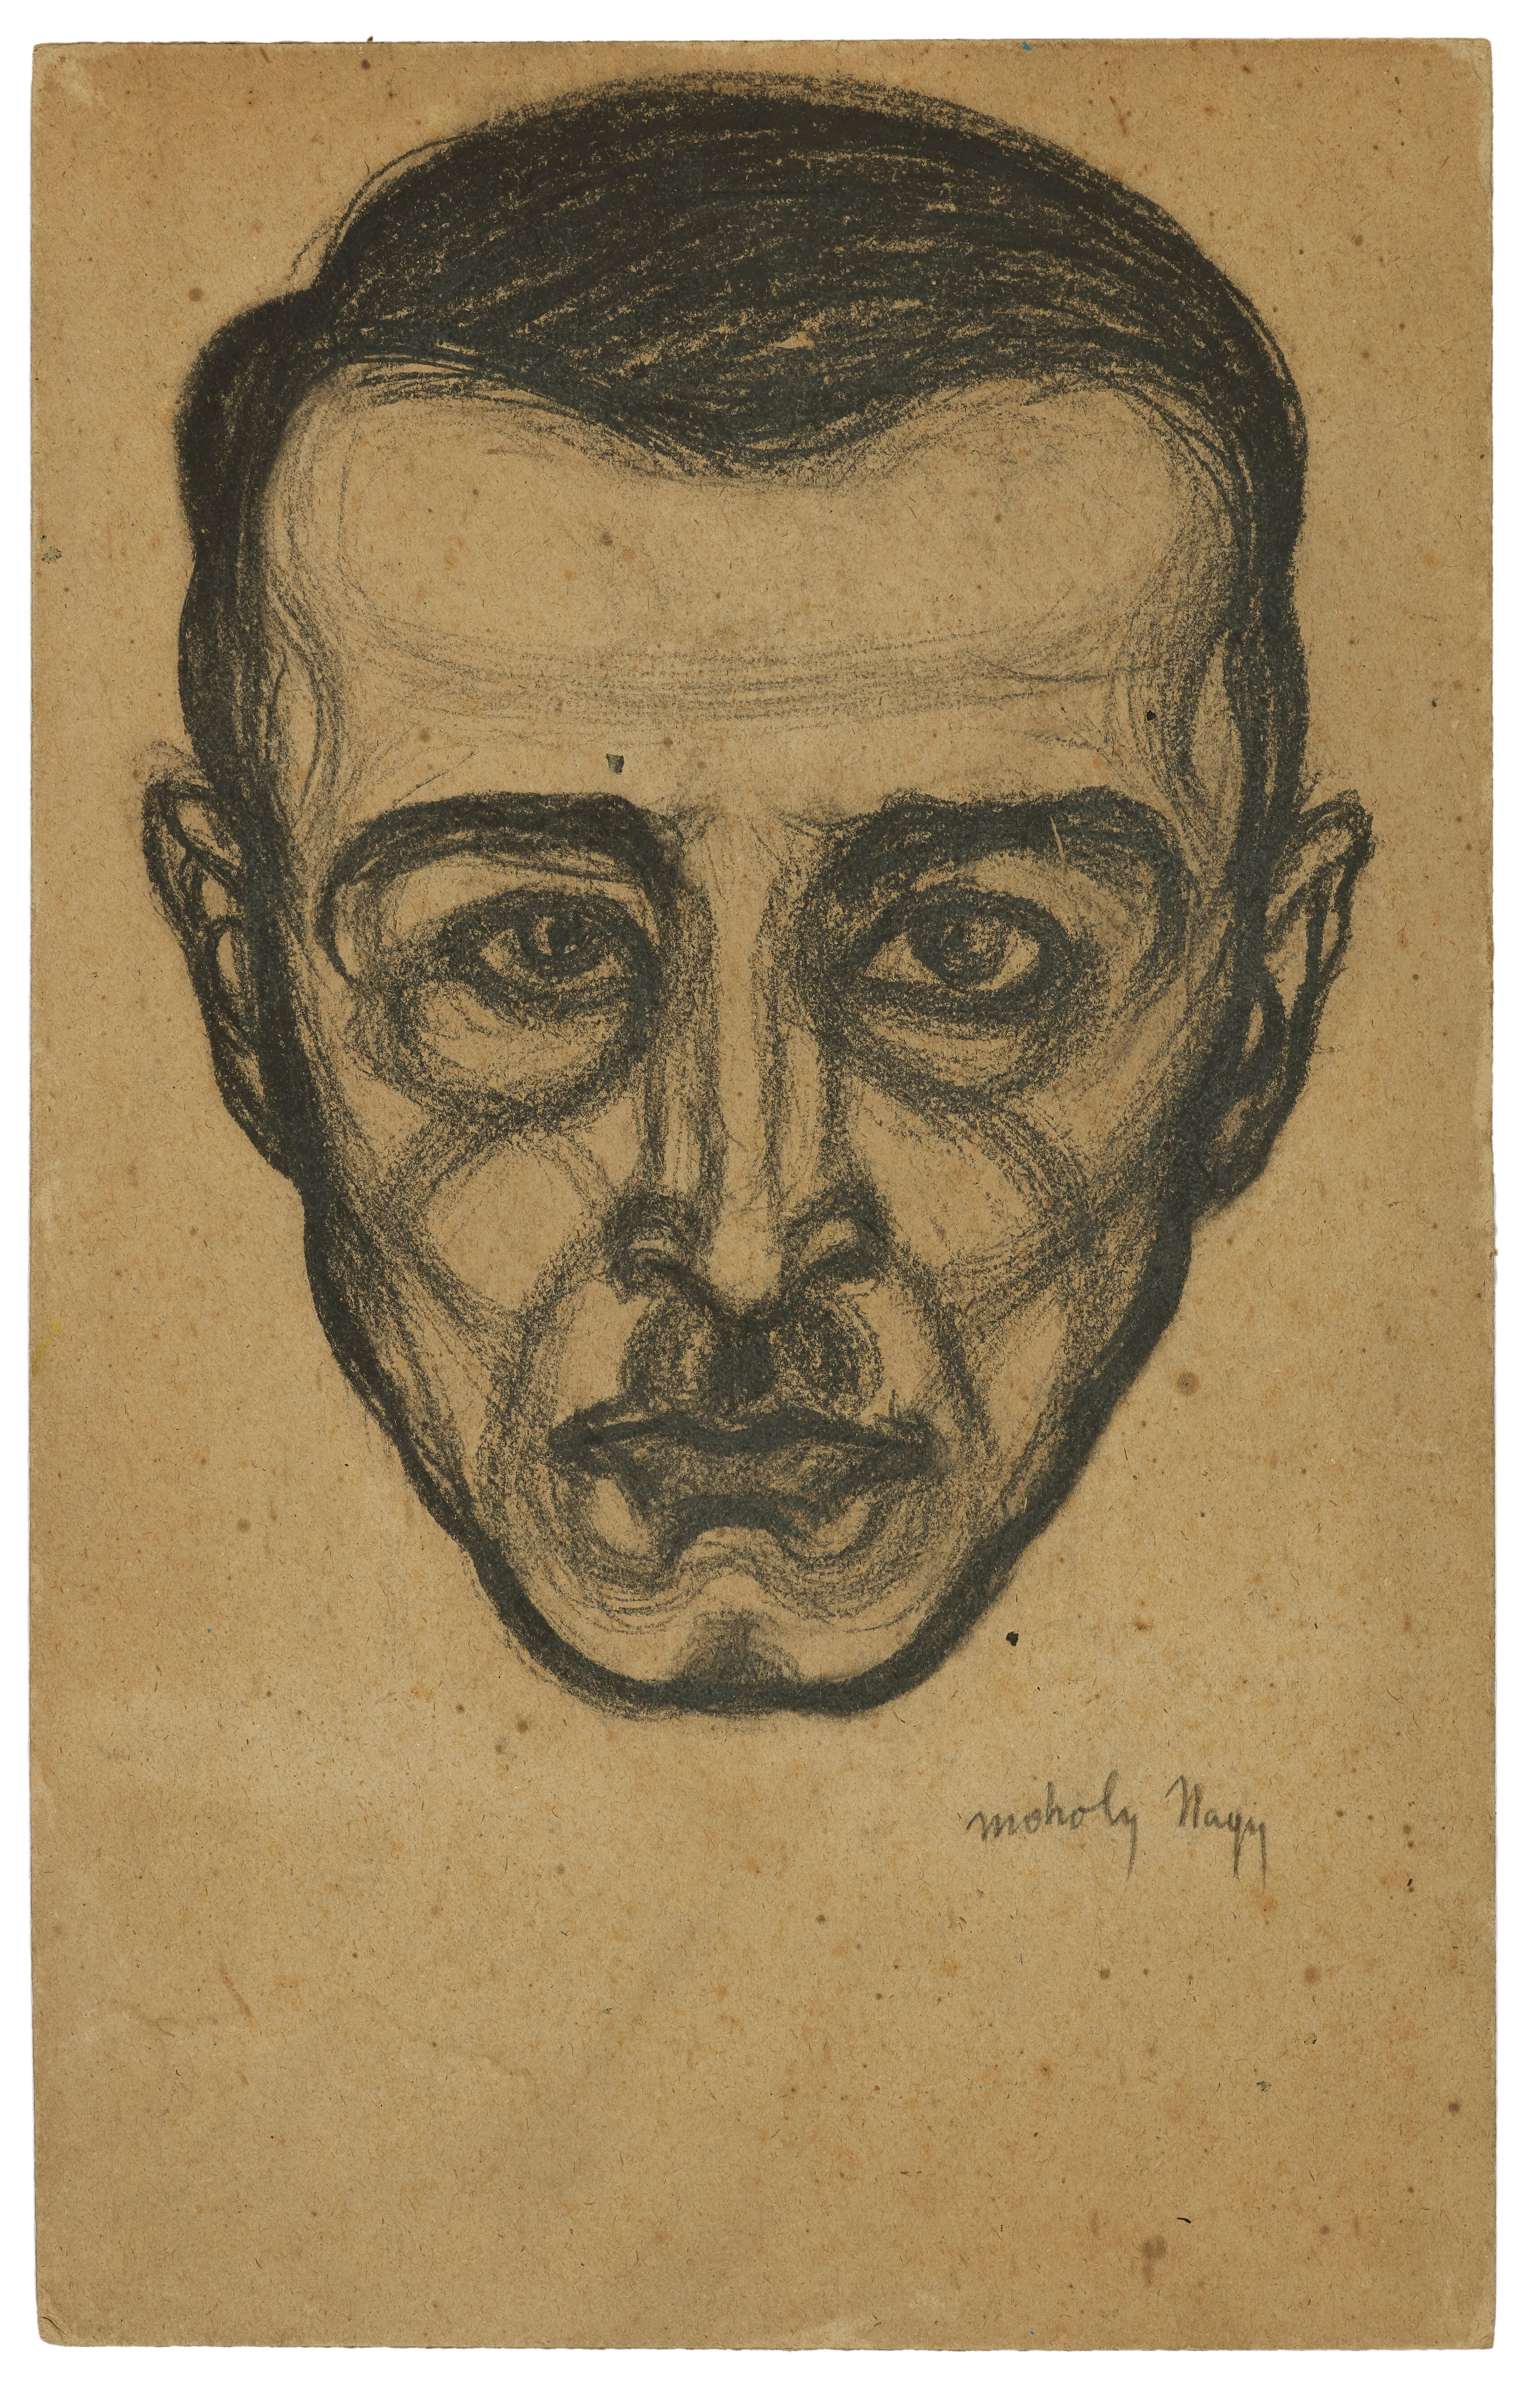 Porträt eines Mannes, eine expressionistische Zeichnung von Lszl Moholy-Nagy